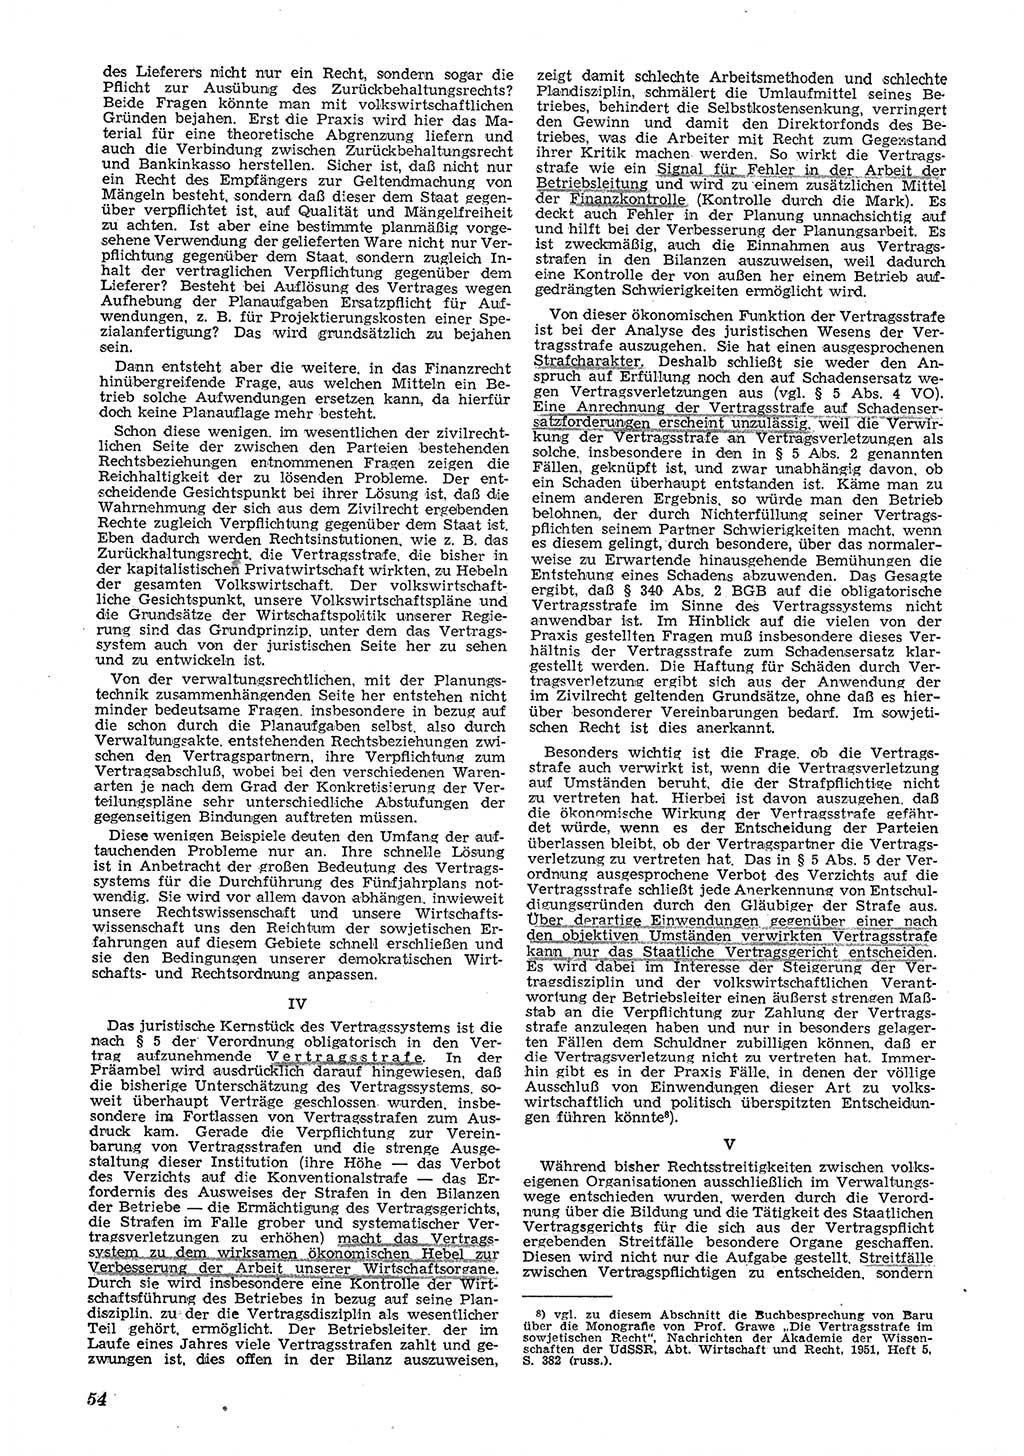 Neue Justiz (NJ), Zeitschrift für Recht und Rechtswissenschaft [Deutsche Demokratische Republik (DDR)], 6. Jahrgang 1952, Seite 54 (NJ DDR 1952, S. 54)